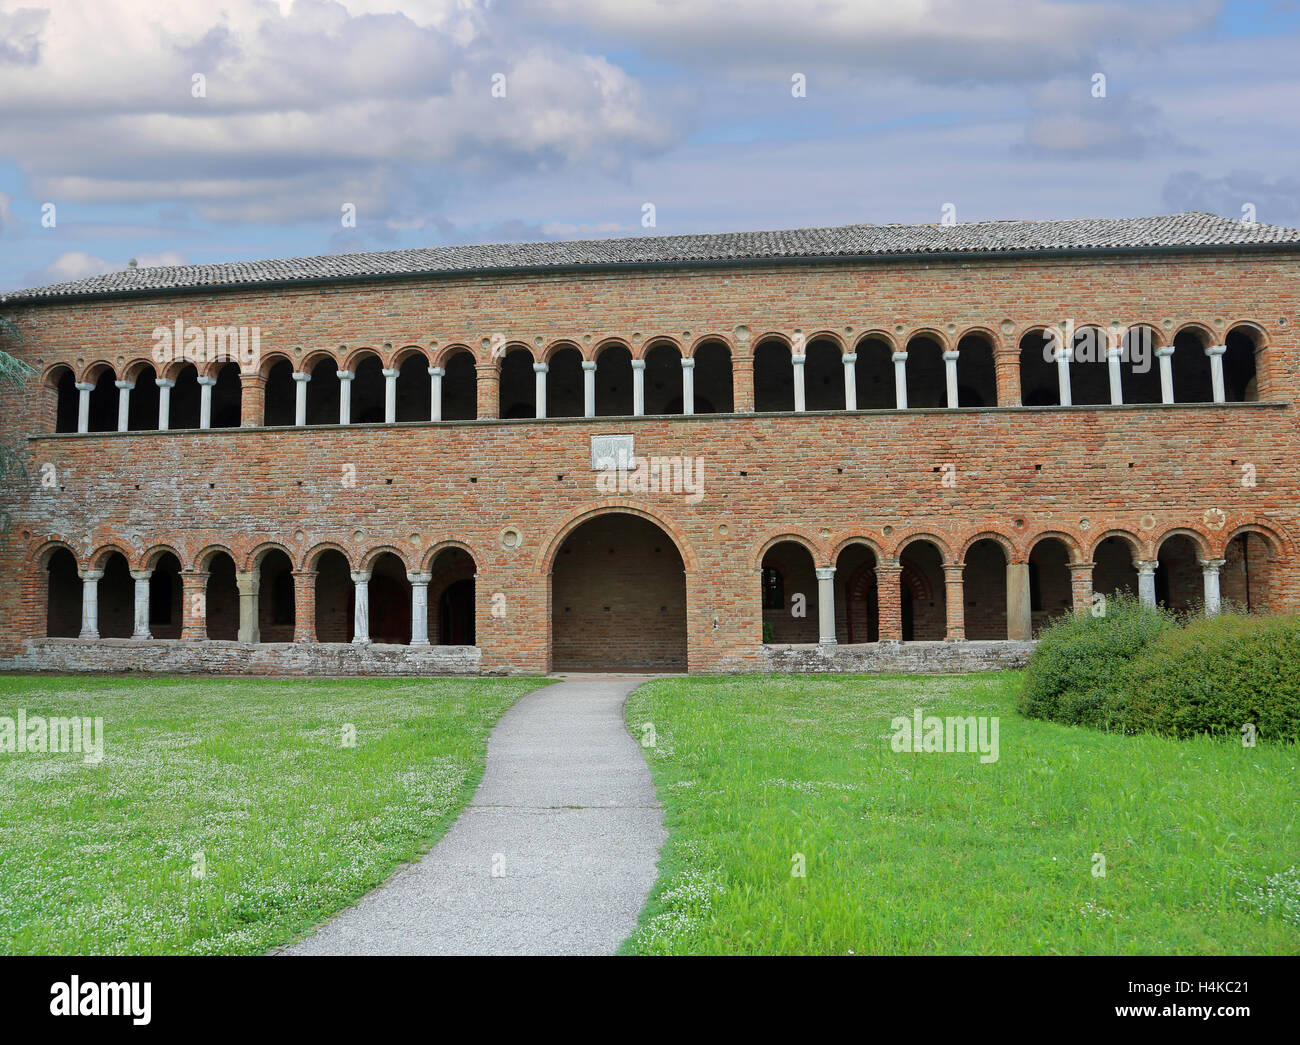 Bâtiment historique appelé Palazzo della Ragione dans l'abbaye de Pomposa dans l'Italie centrale Banque D'Images